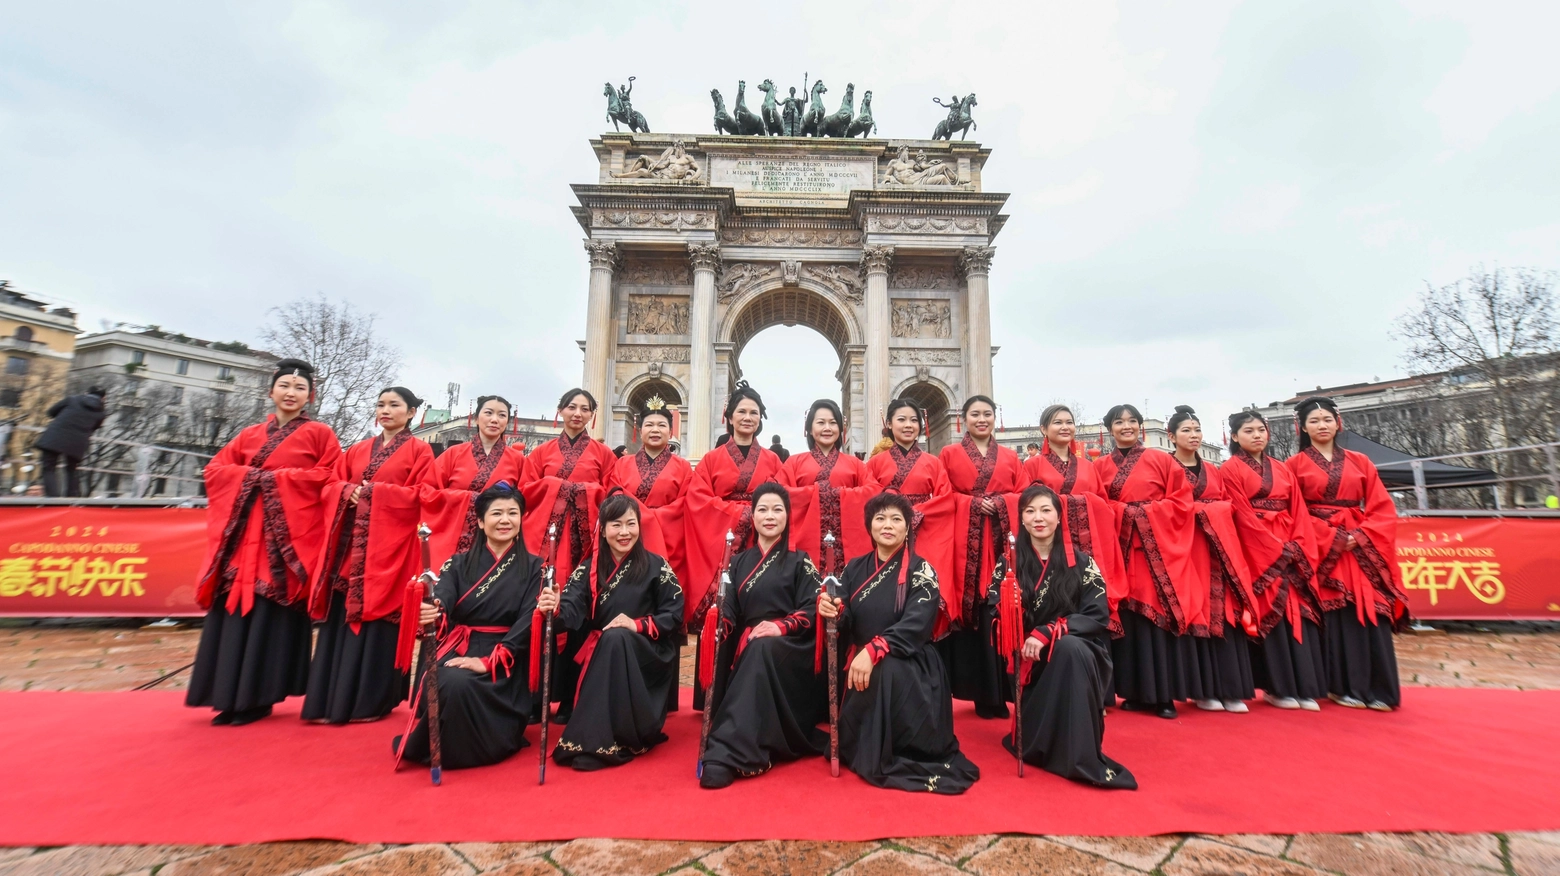 Festeggiamenti per il Capodanno cinese all'Arco della Pace, Milano (Ansa/Andrea Fasani)